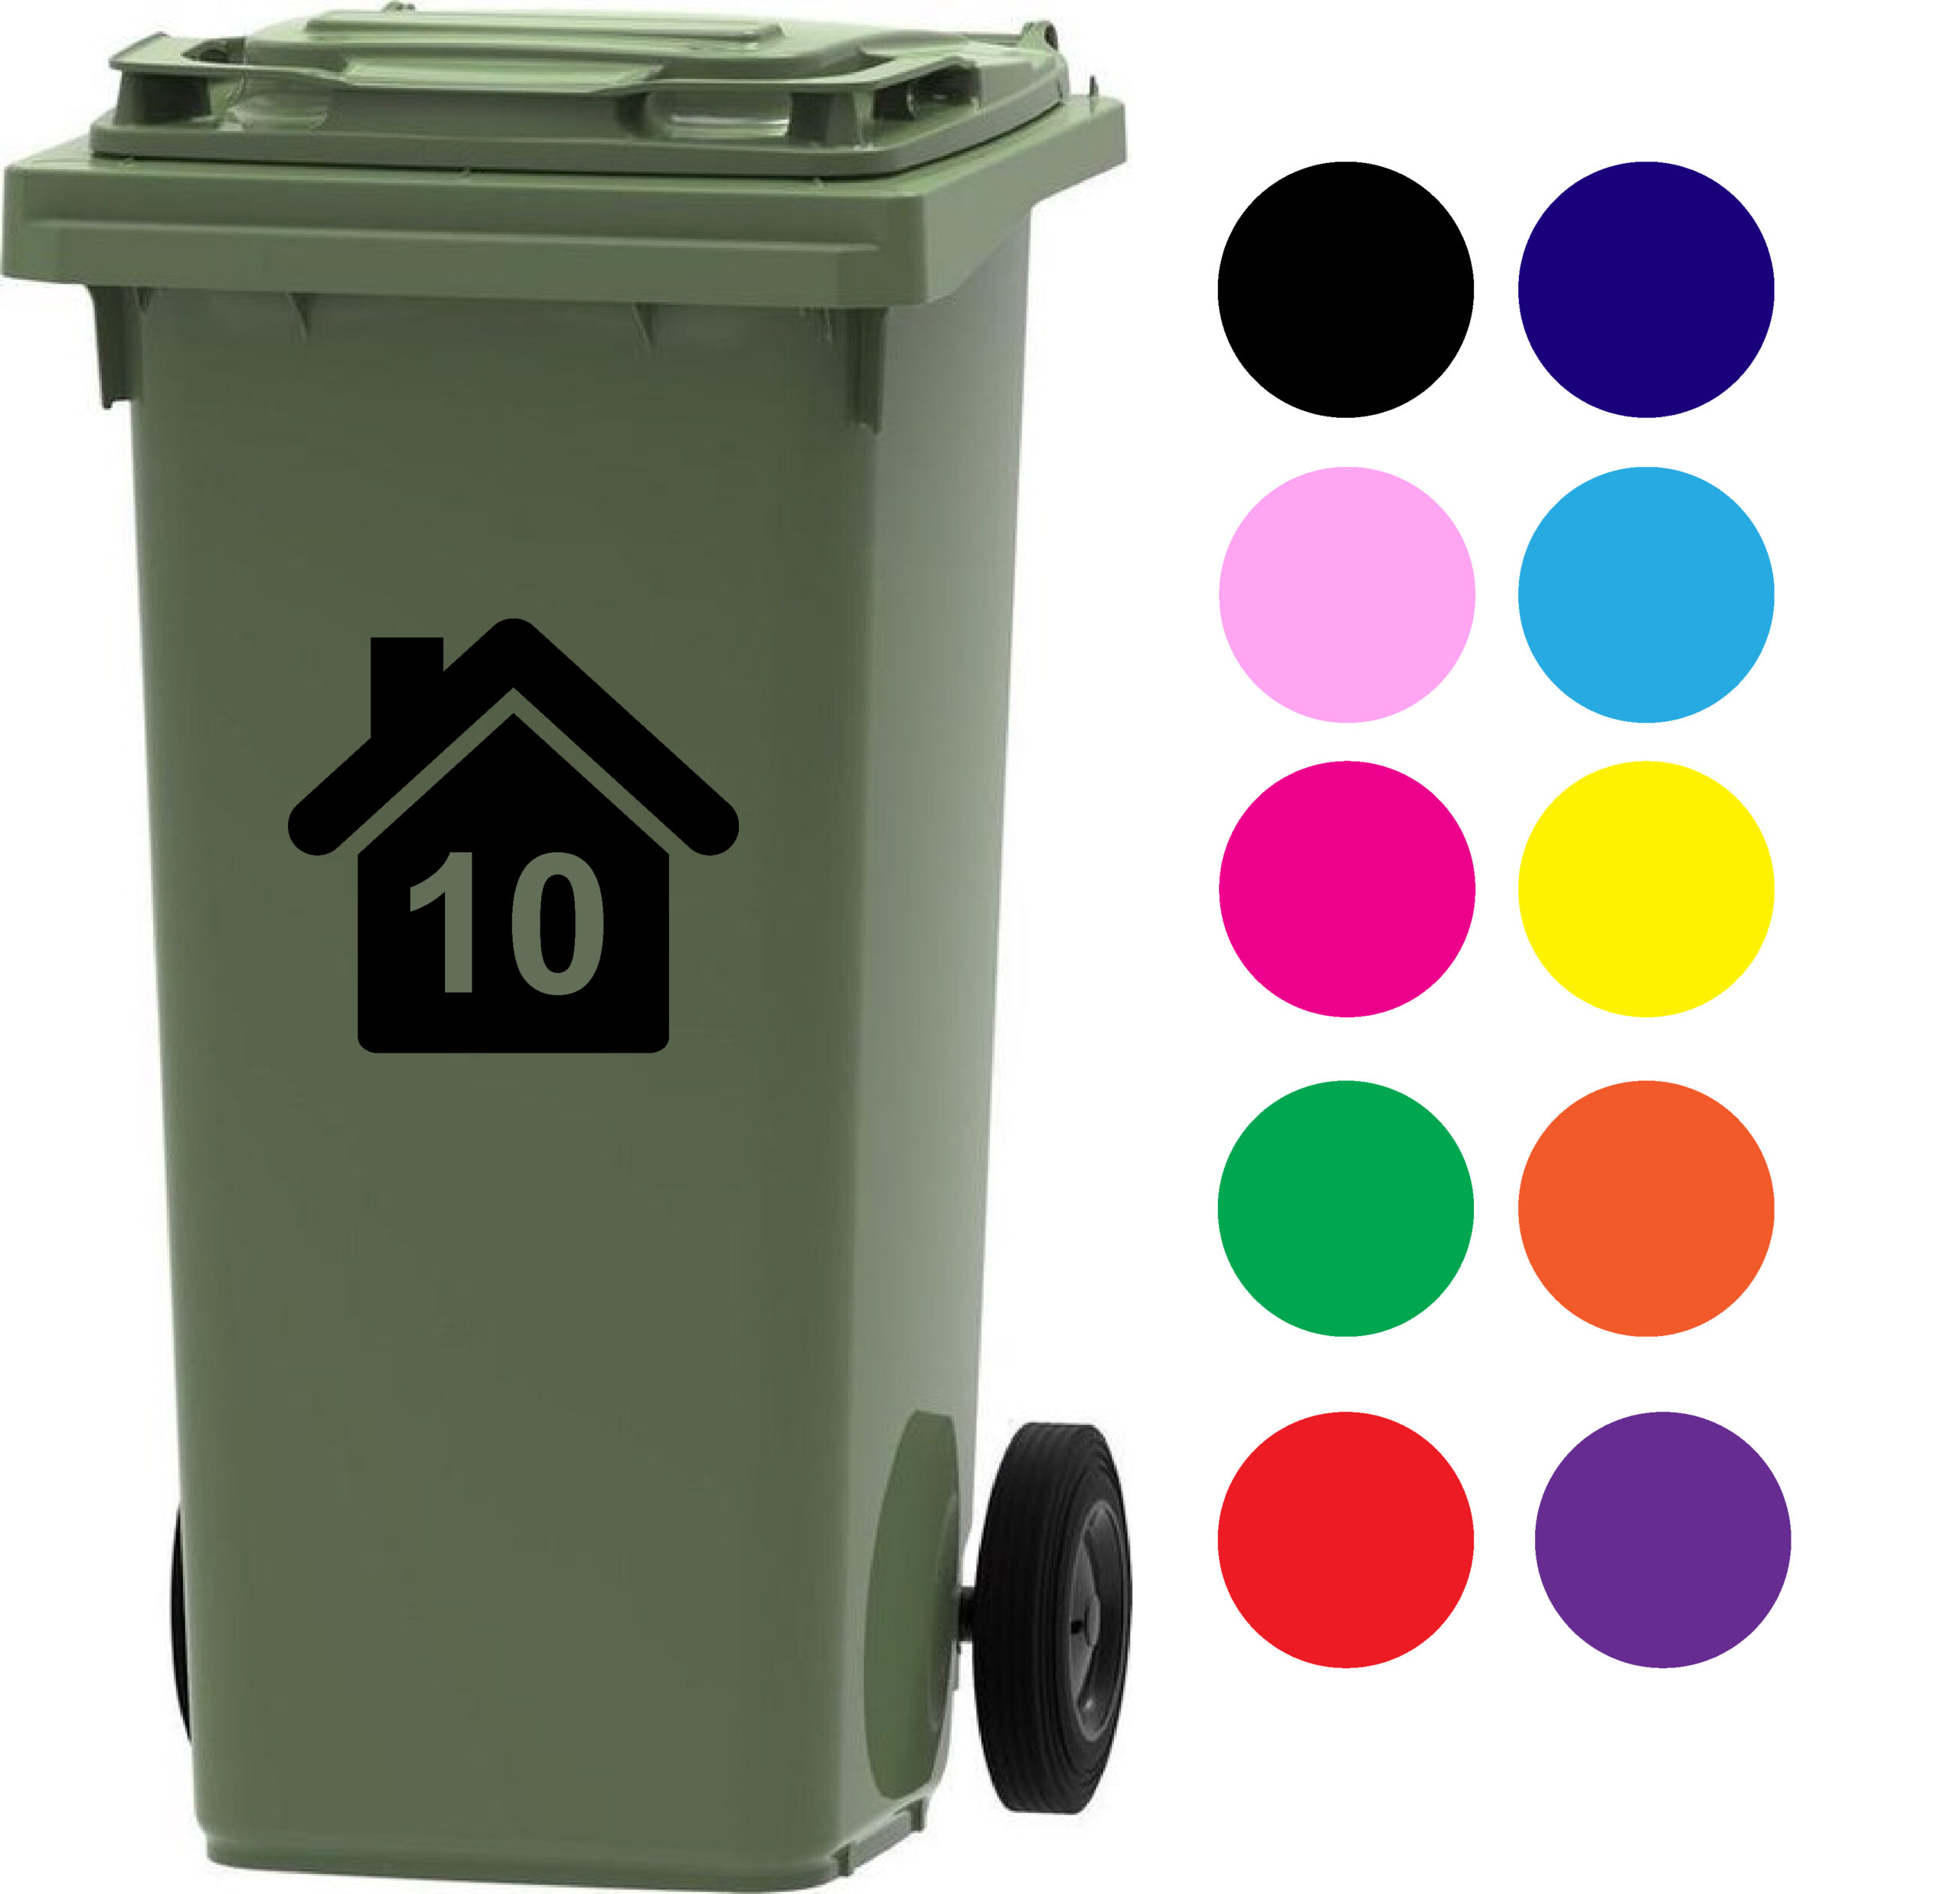 klinker Verlichting stam kliko container sticker huisje kleur naar keuze - Stickers op maat